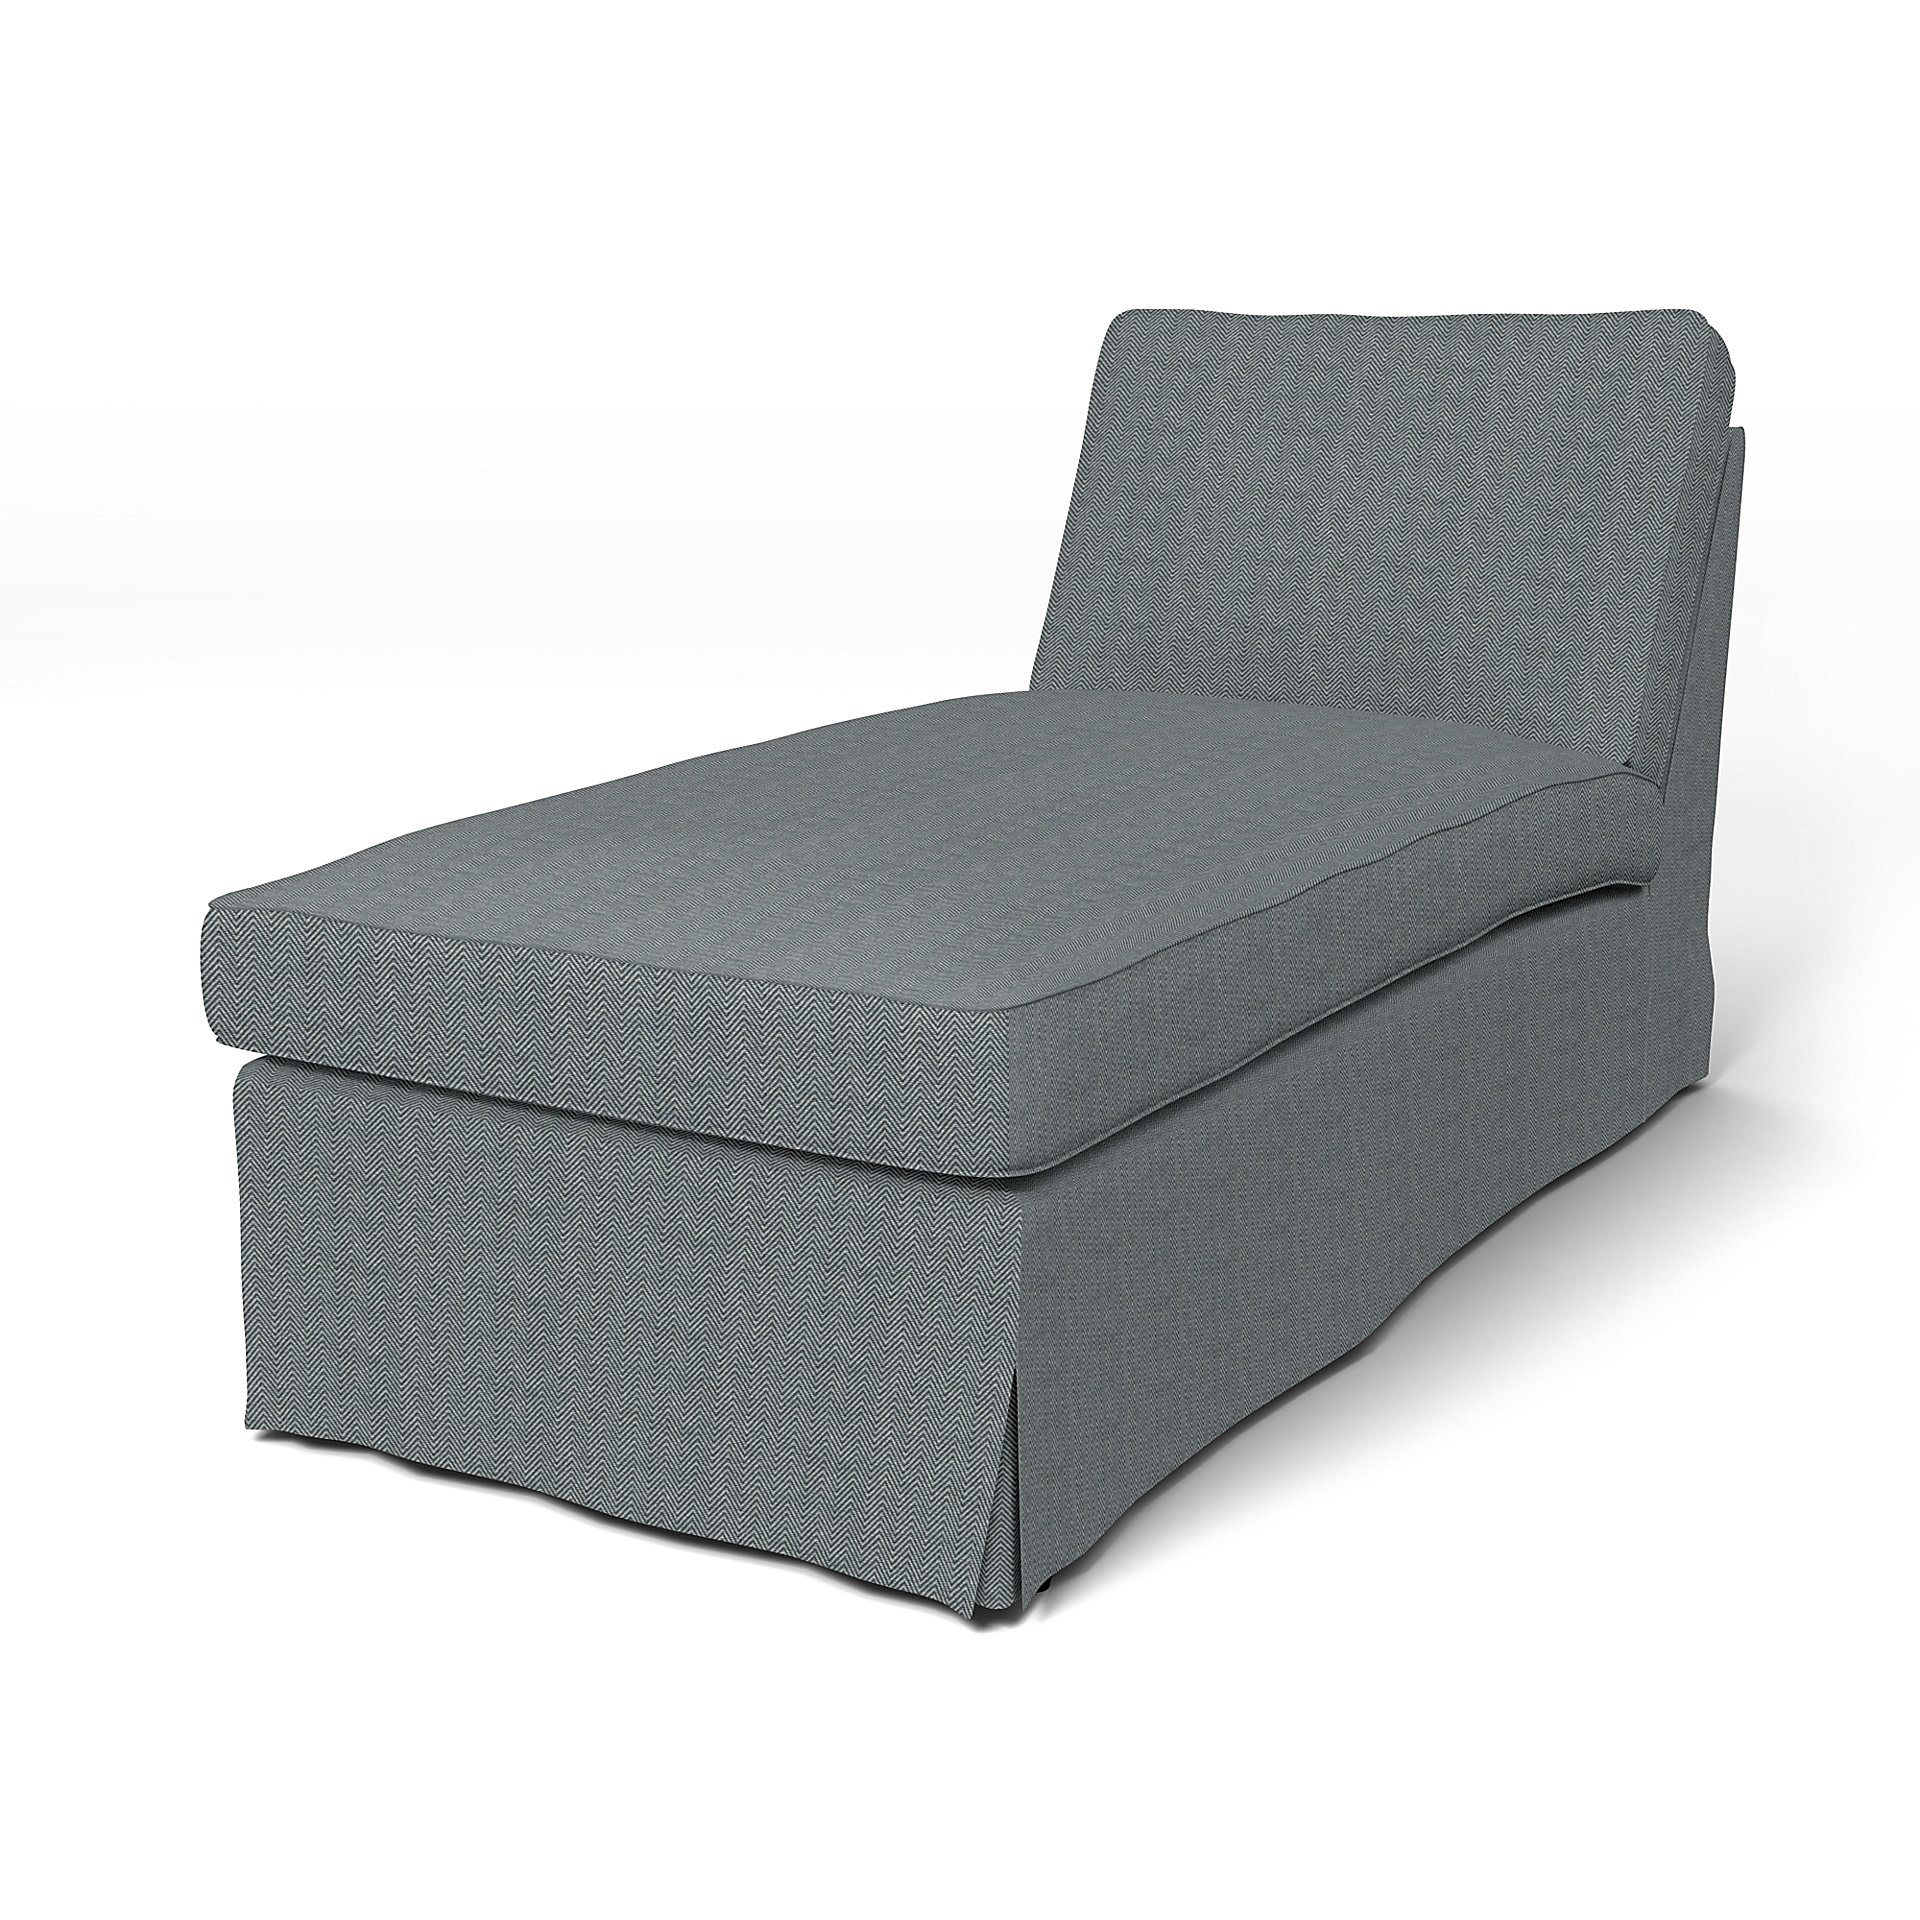 IKEA - Ektorp Chaise Longue Cover, Denim, Cotton - Bemz